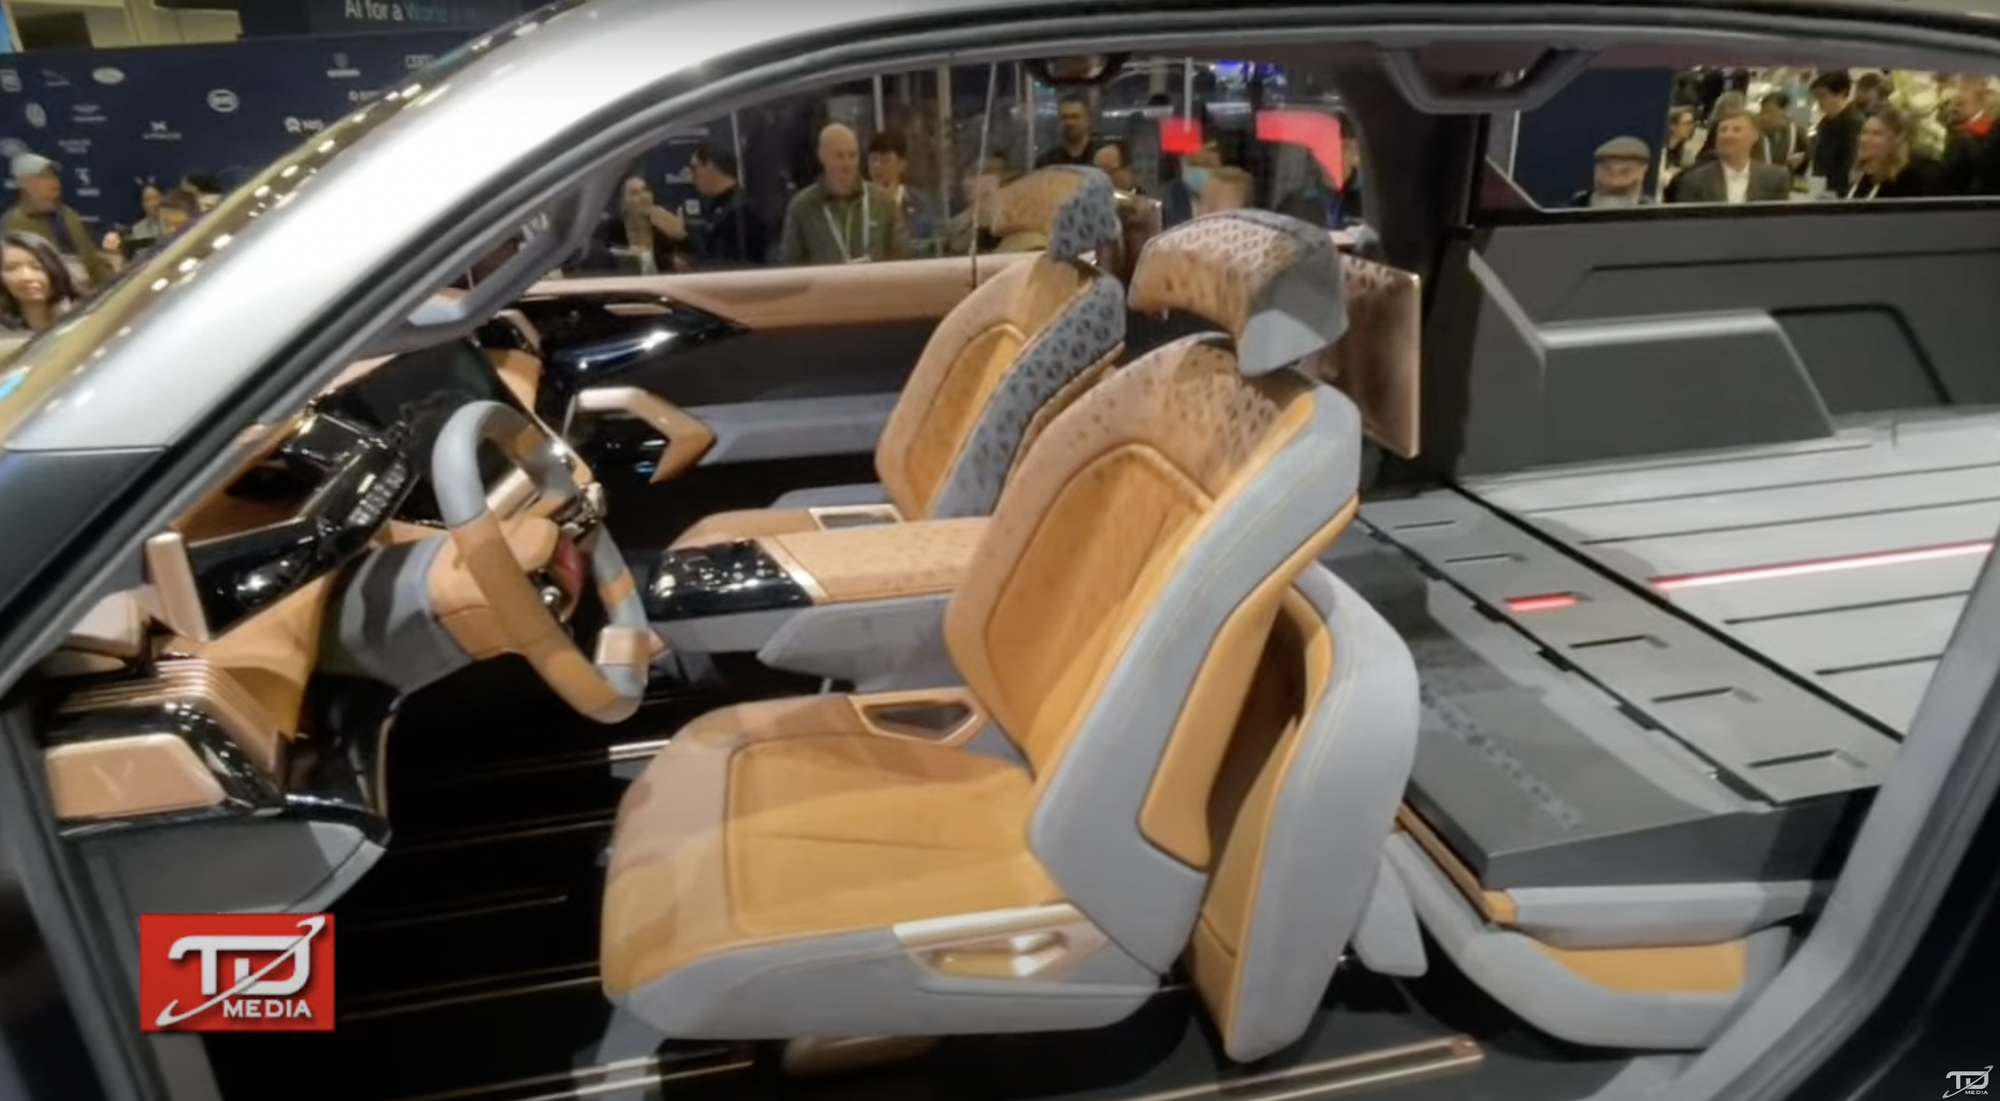 Bán tải VinFast ra mắt với thiết kế như xe viễn tưởng: Cửa mở ngược như Rolls-Royce, trần kính cực lớn - Ảnh 4.